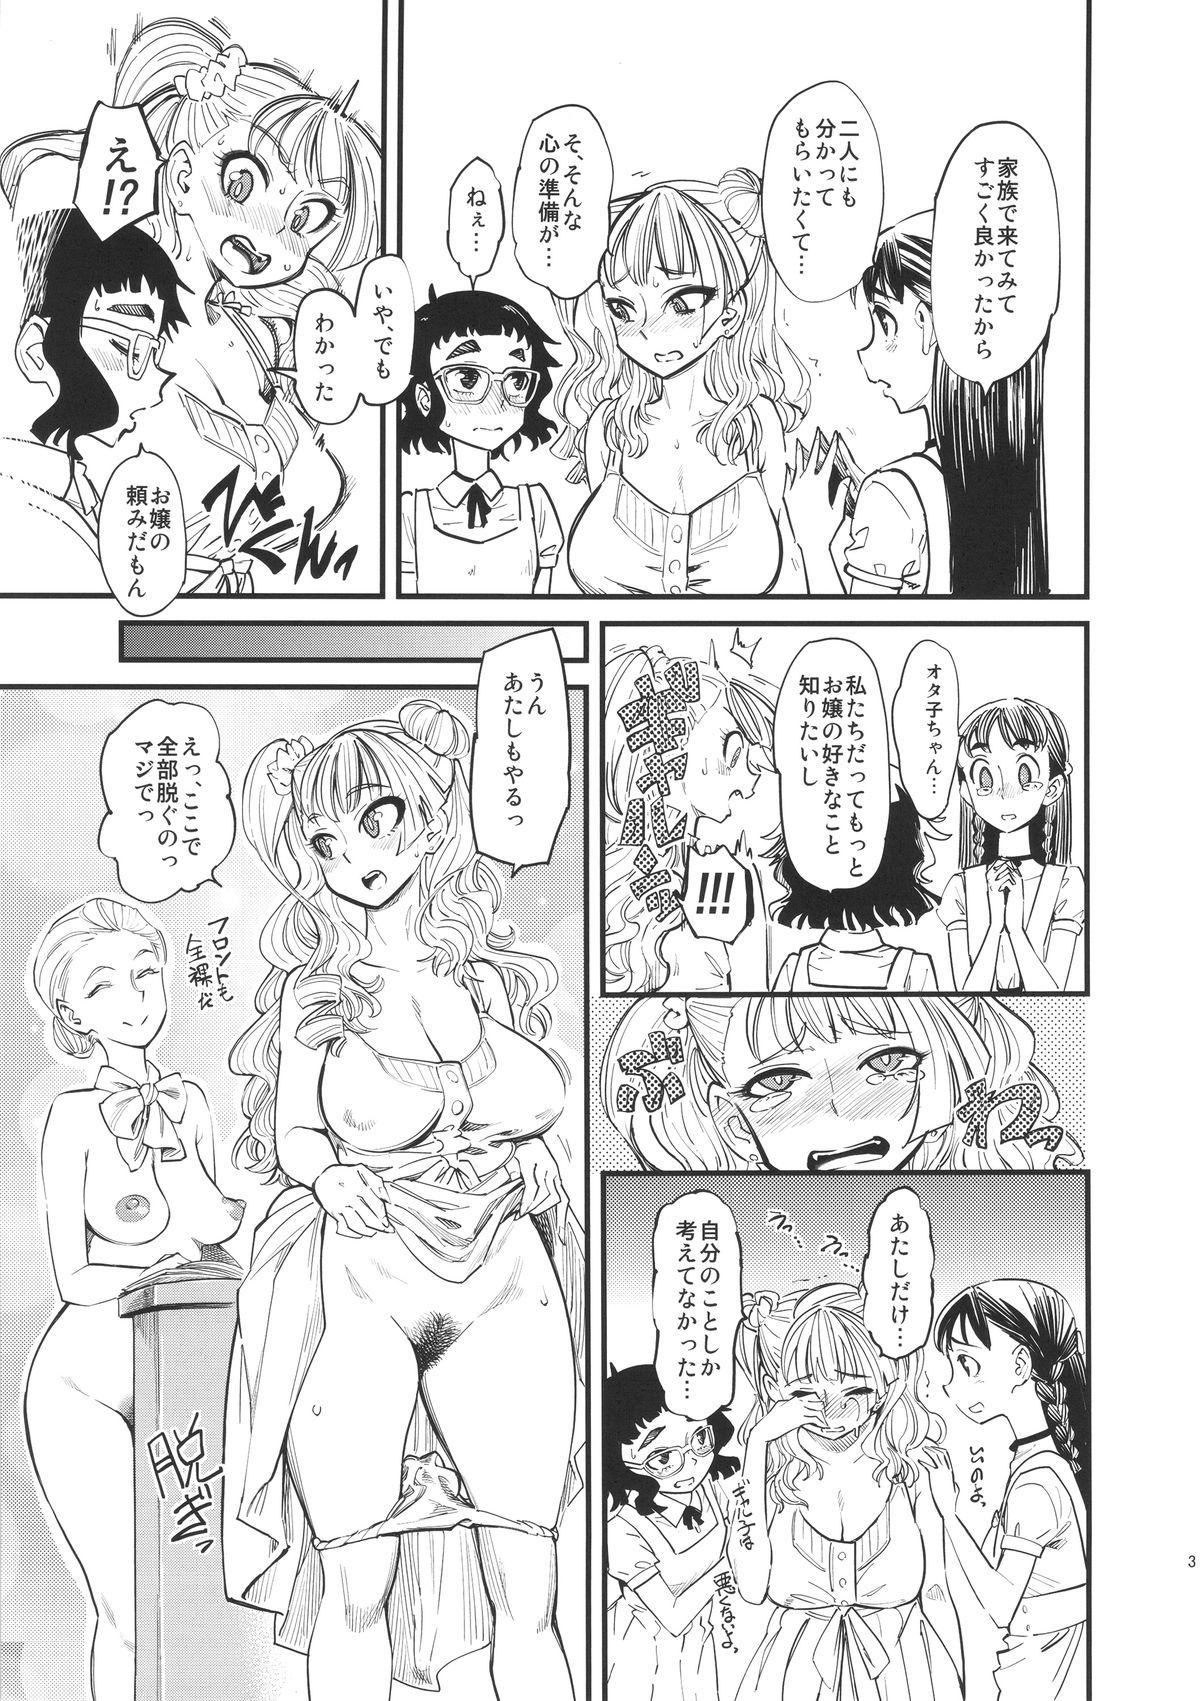 Hard Cock NMB - Oshiete galko-chan Peituda - Page 4